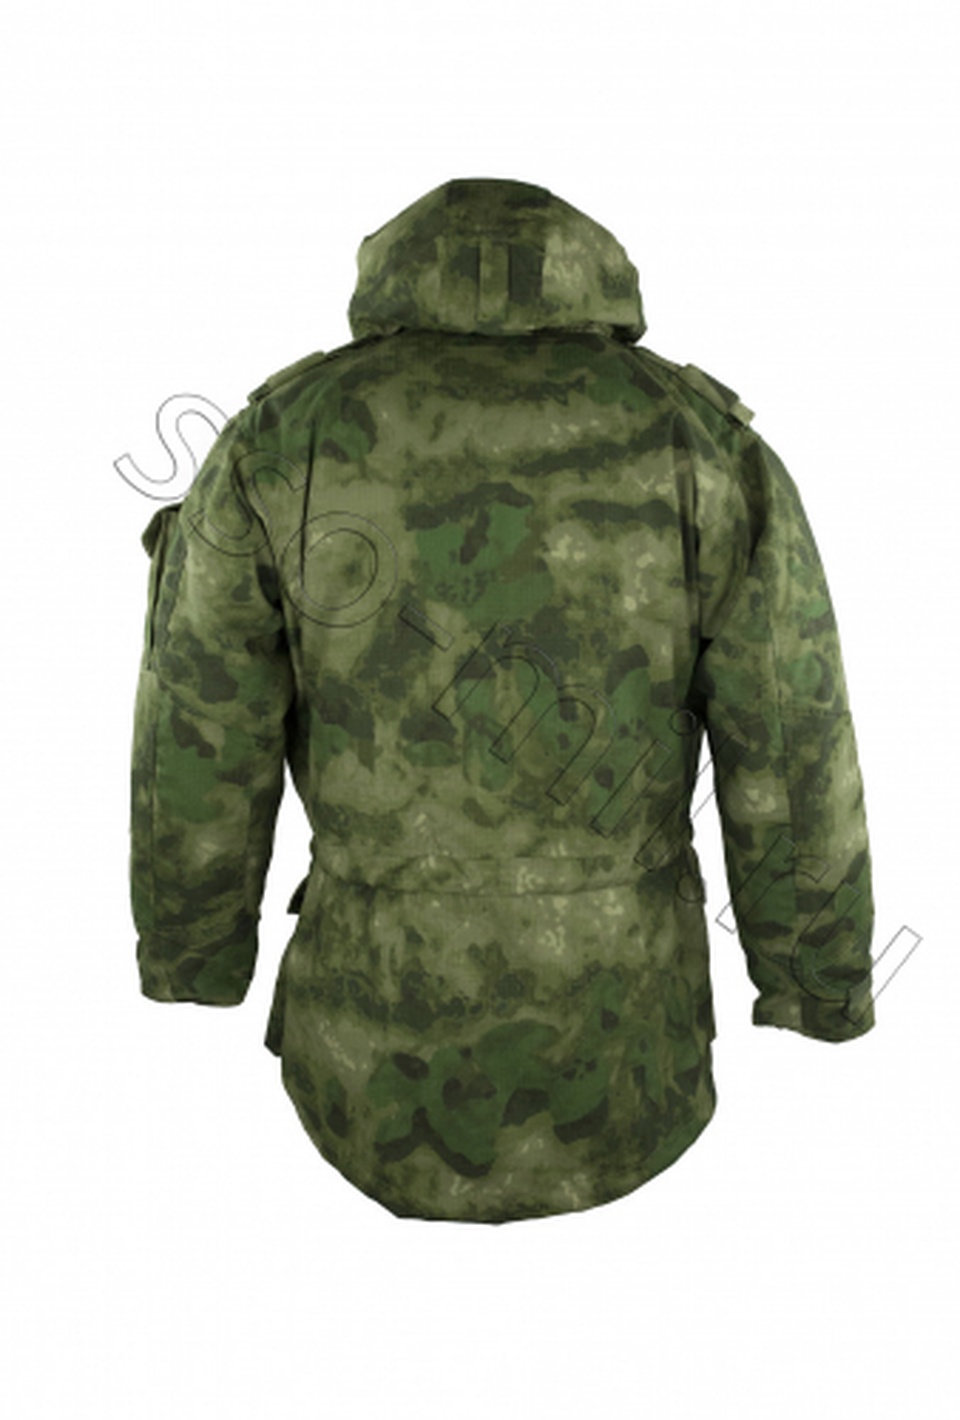 Куртка МДД 3. Куртка морского десантника зимняя СоюзСпецОснащение - 9 700 ₽, заказать онлайн.